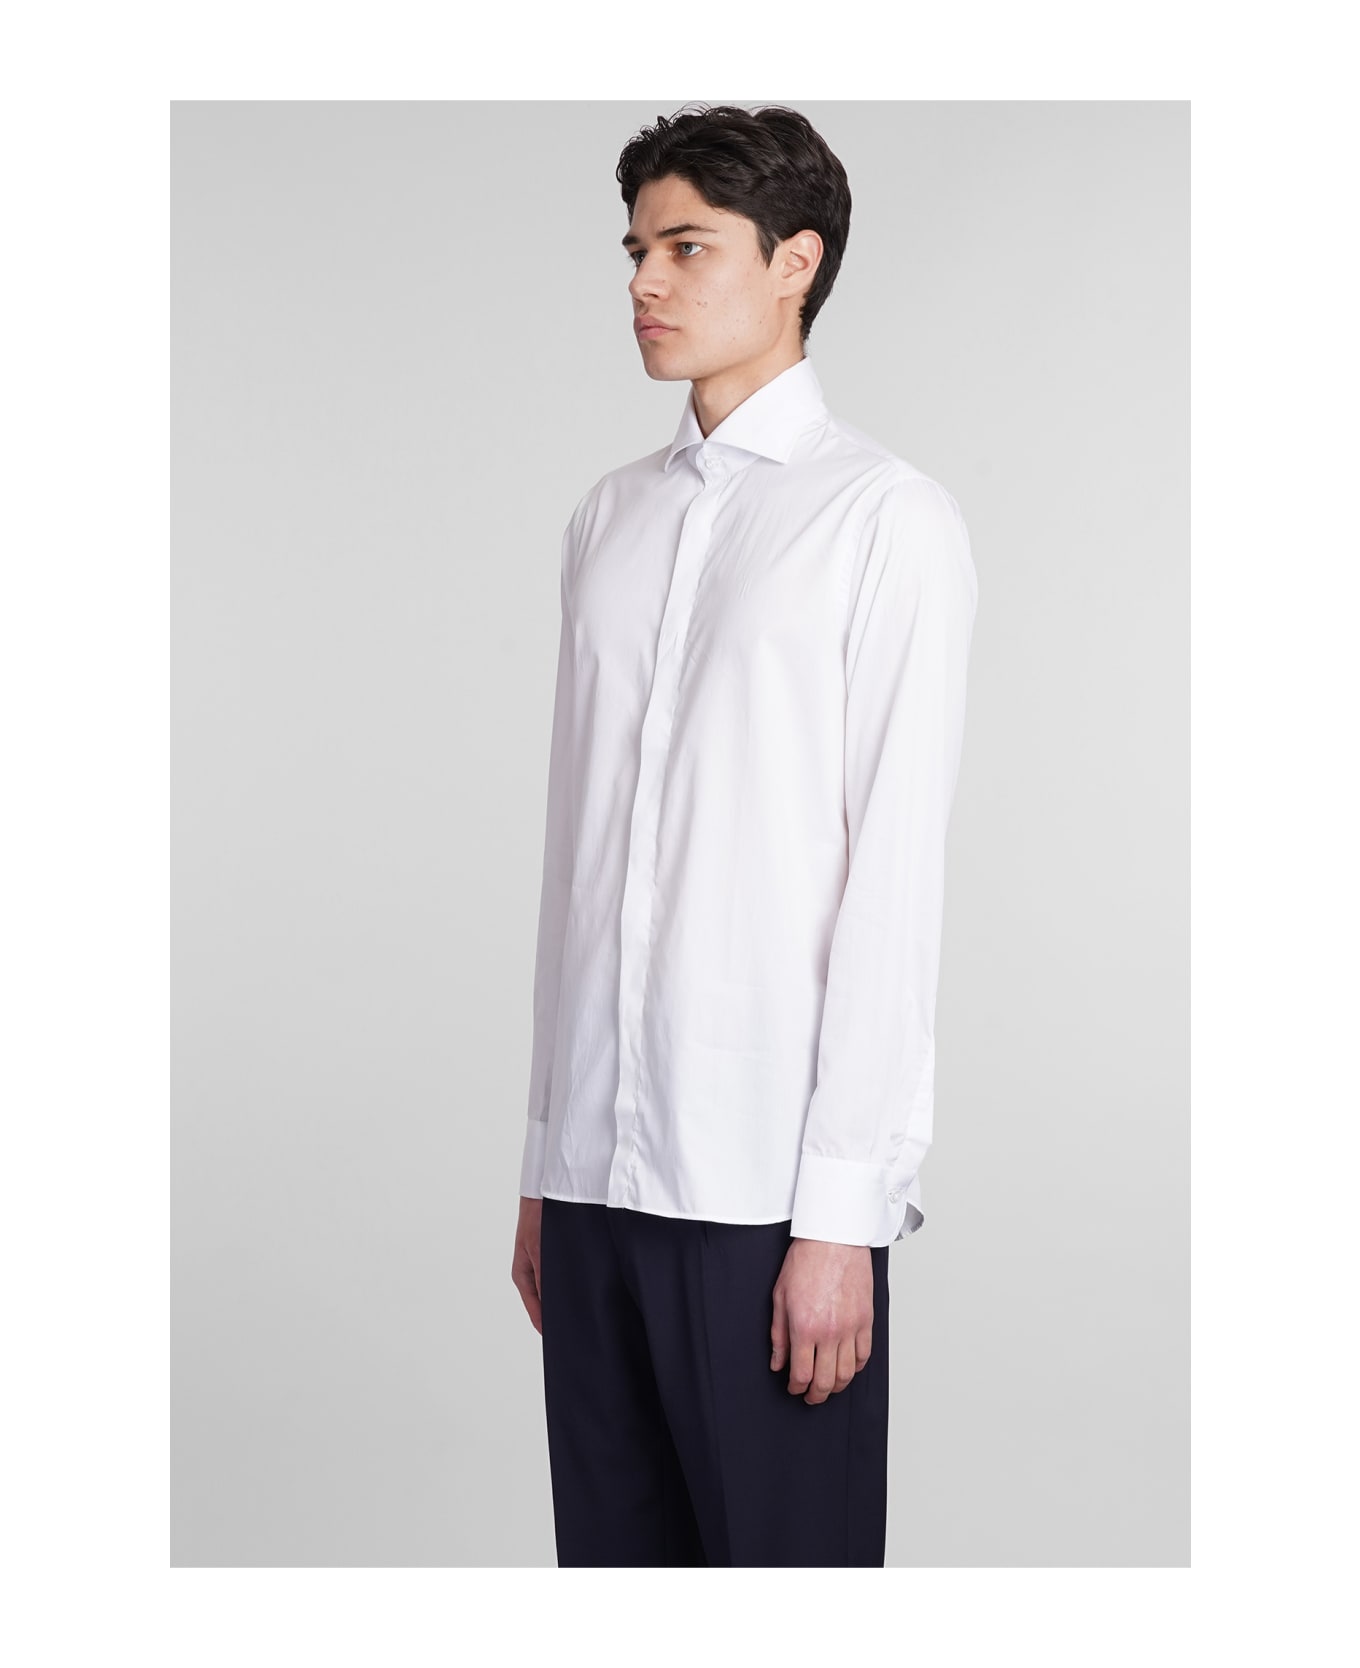 Tagliatore 0205 Shirt In White Cotton - white